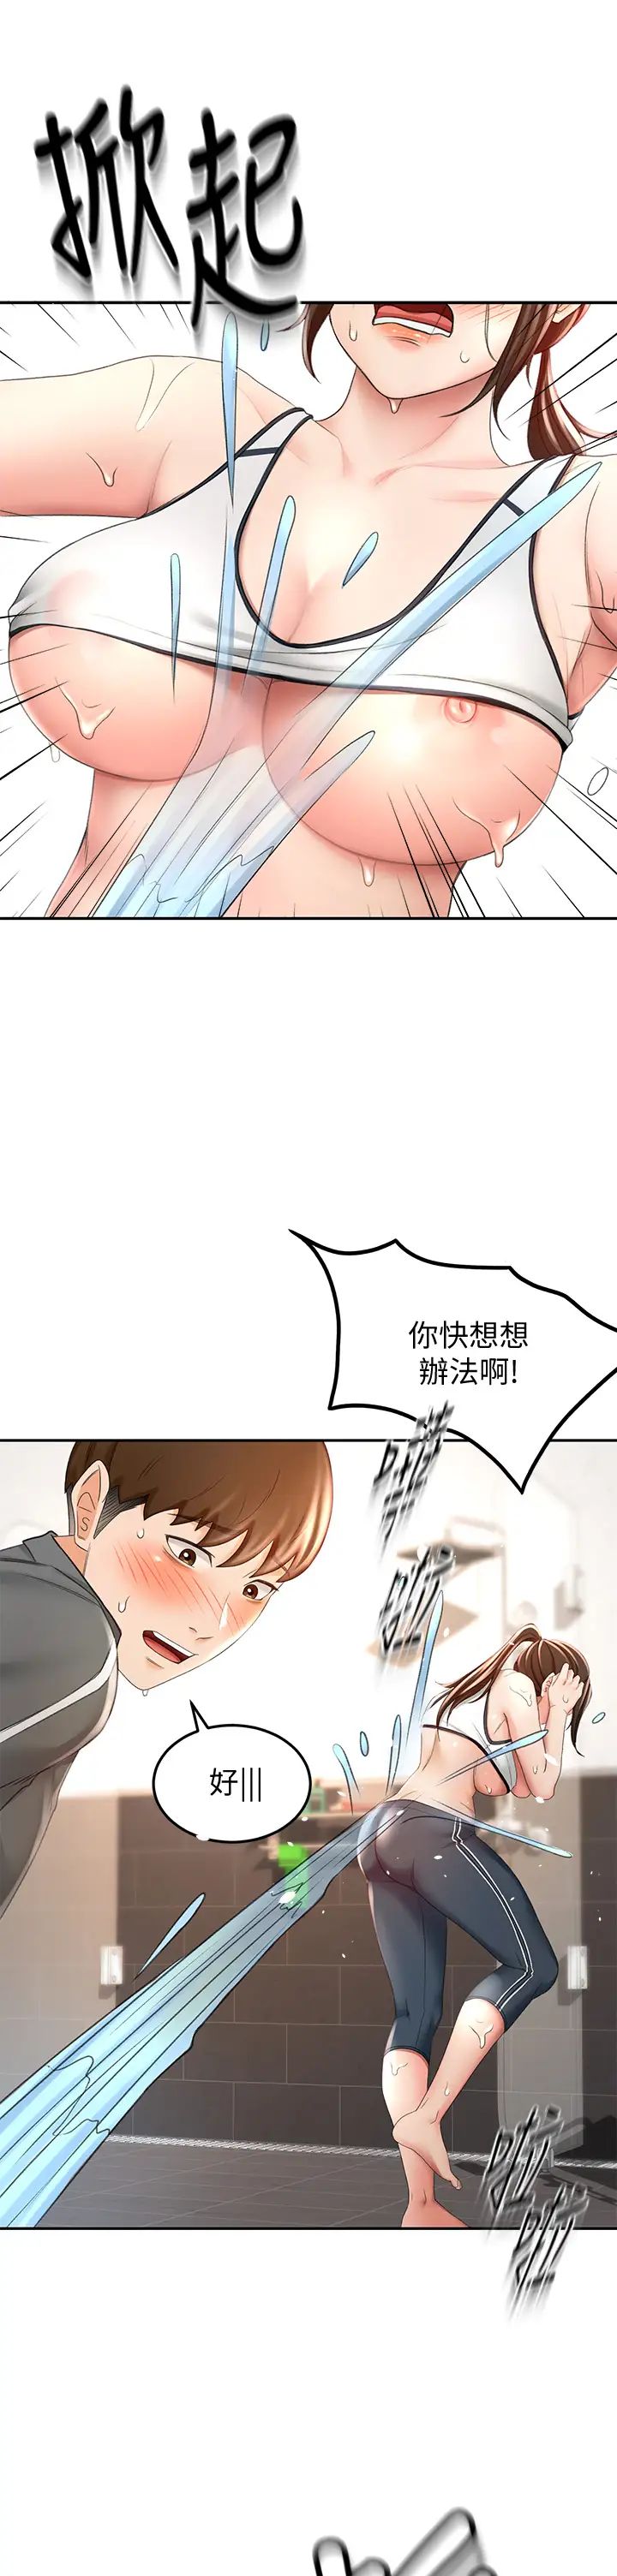 韩国污漫画 劍道學姐 第20话 全身湿透的逸云 5